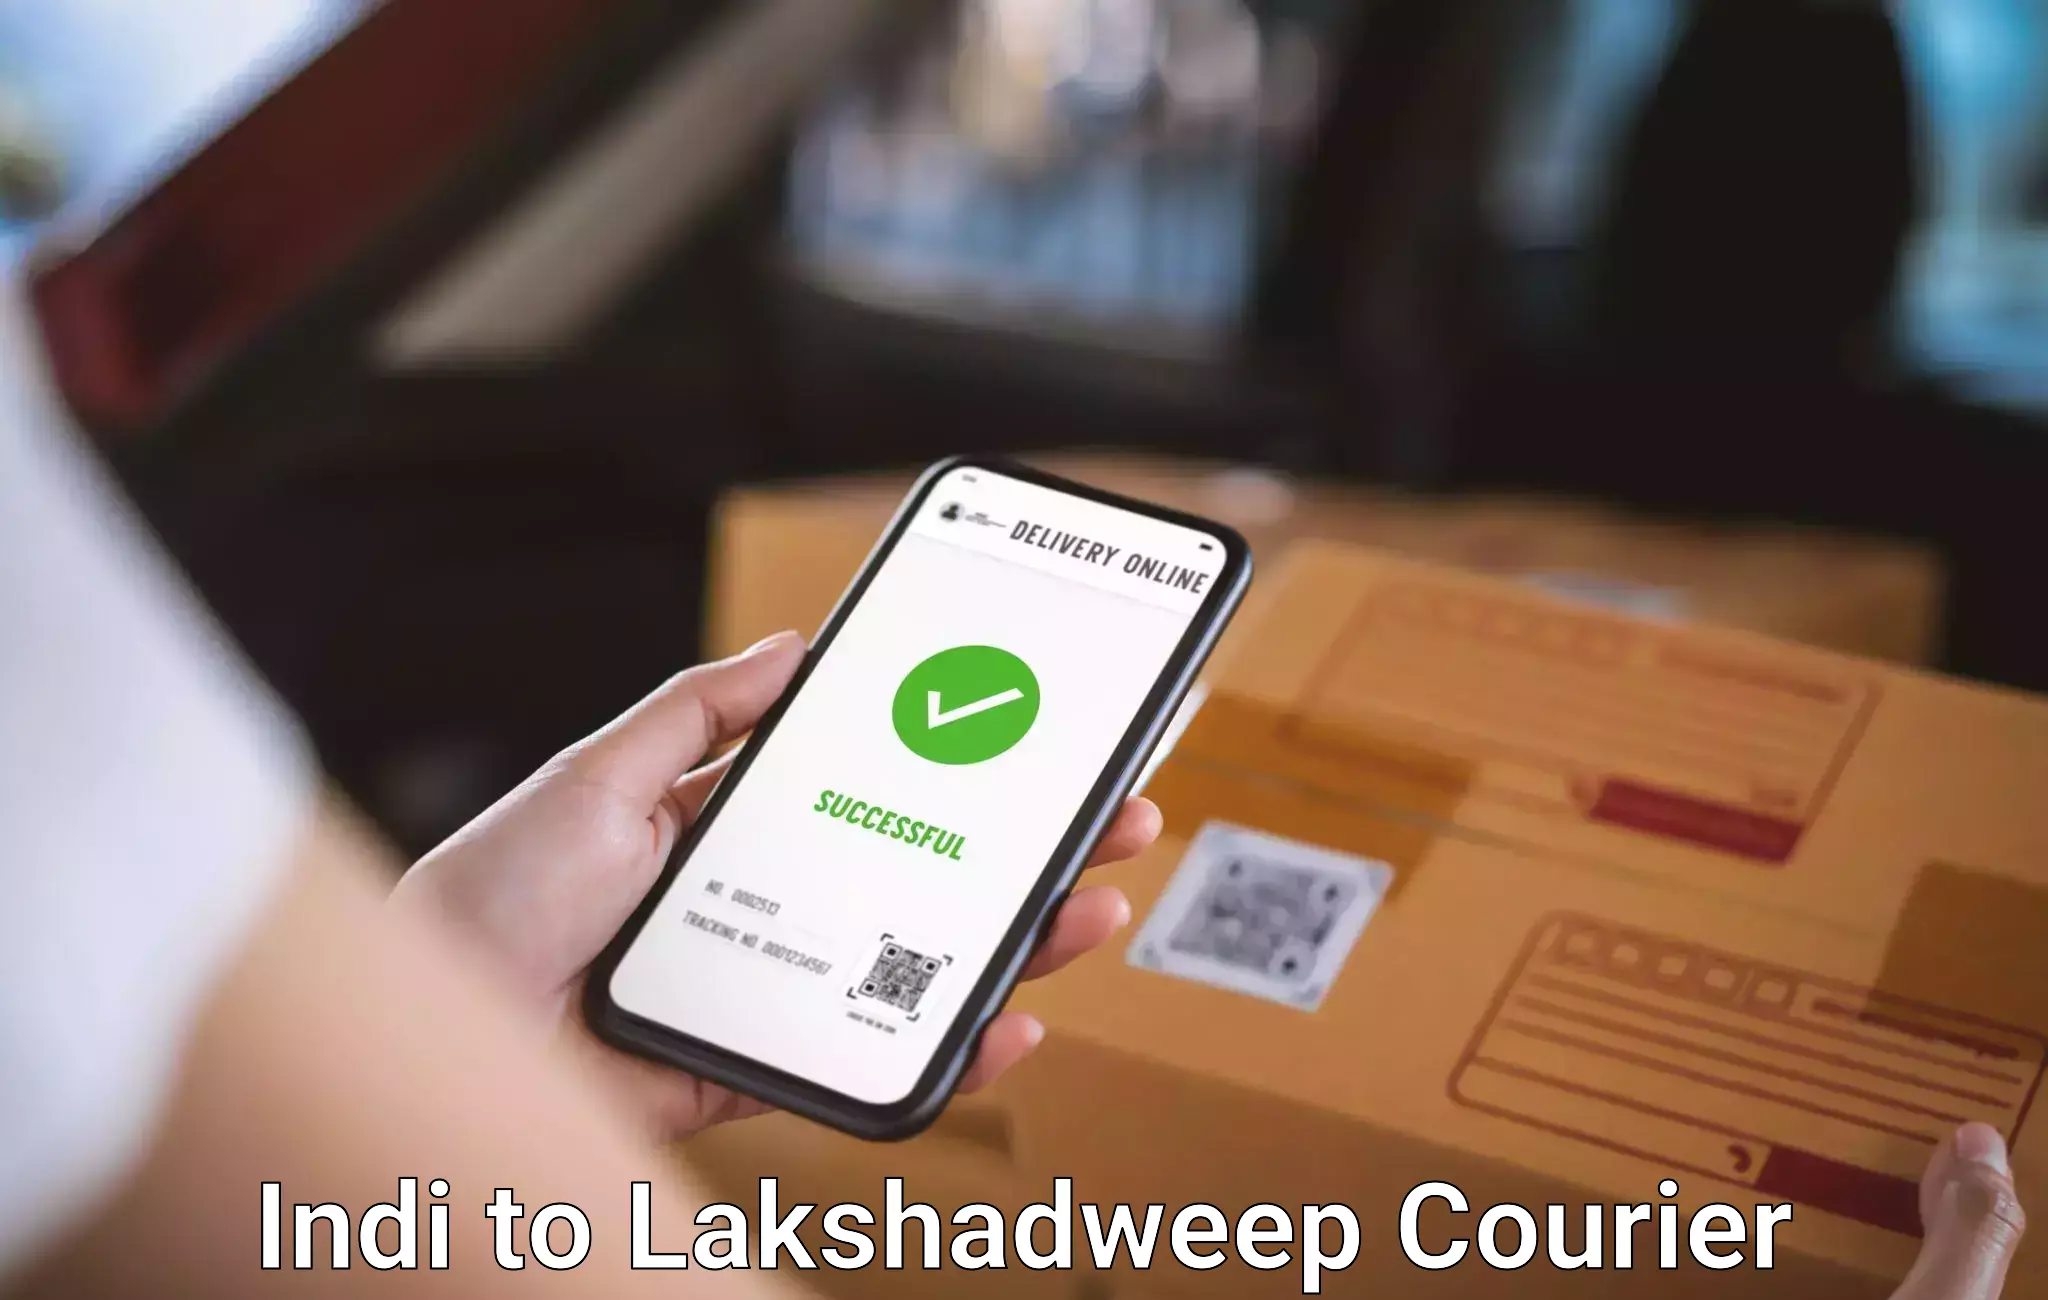 Digital baggage courier Indi to Lakshadweep